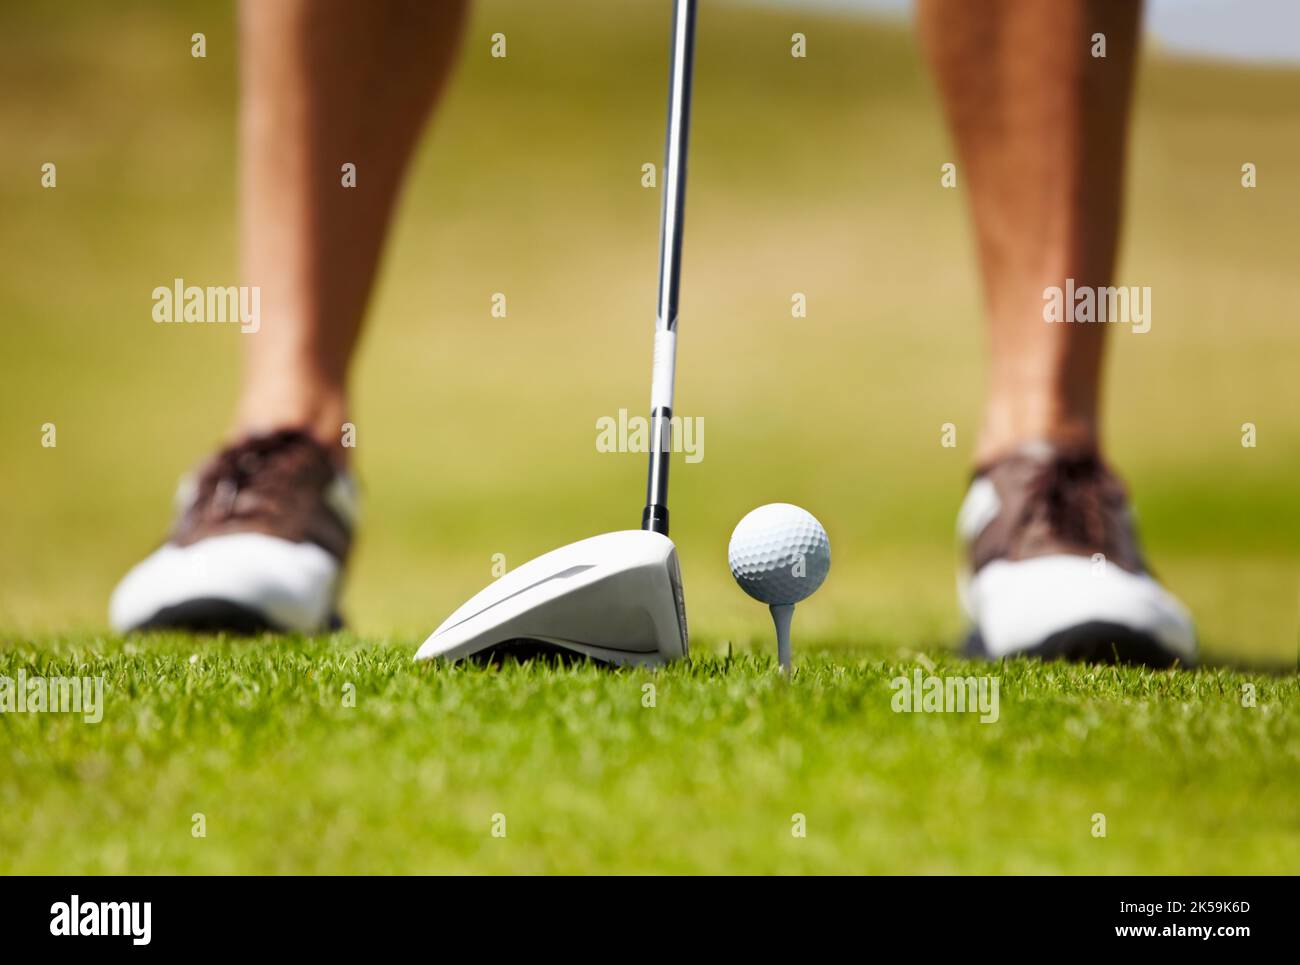 Fahren Sie auf das Grün. Zugeschnittenes Bild eines Golfspielers, der kurz vor dem Golfball auf dem Fairway steht. Stockfoto